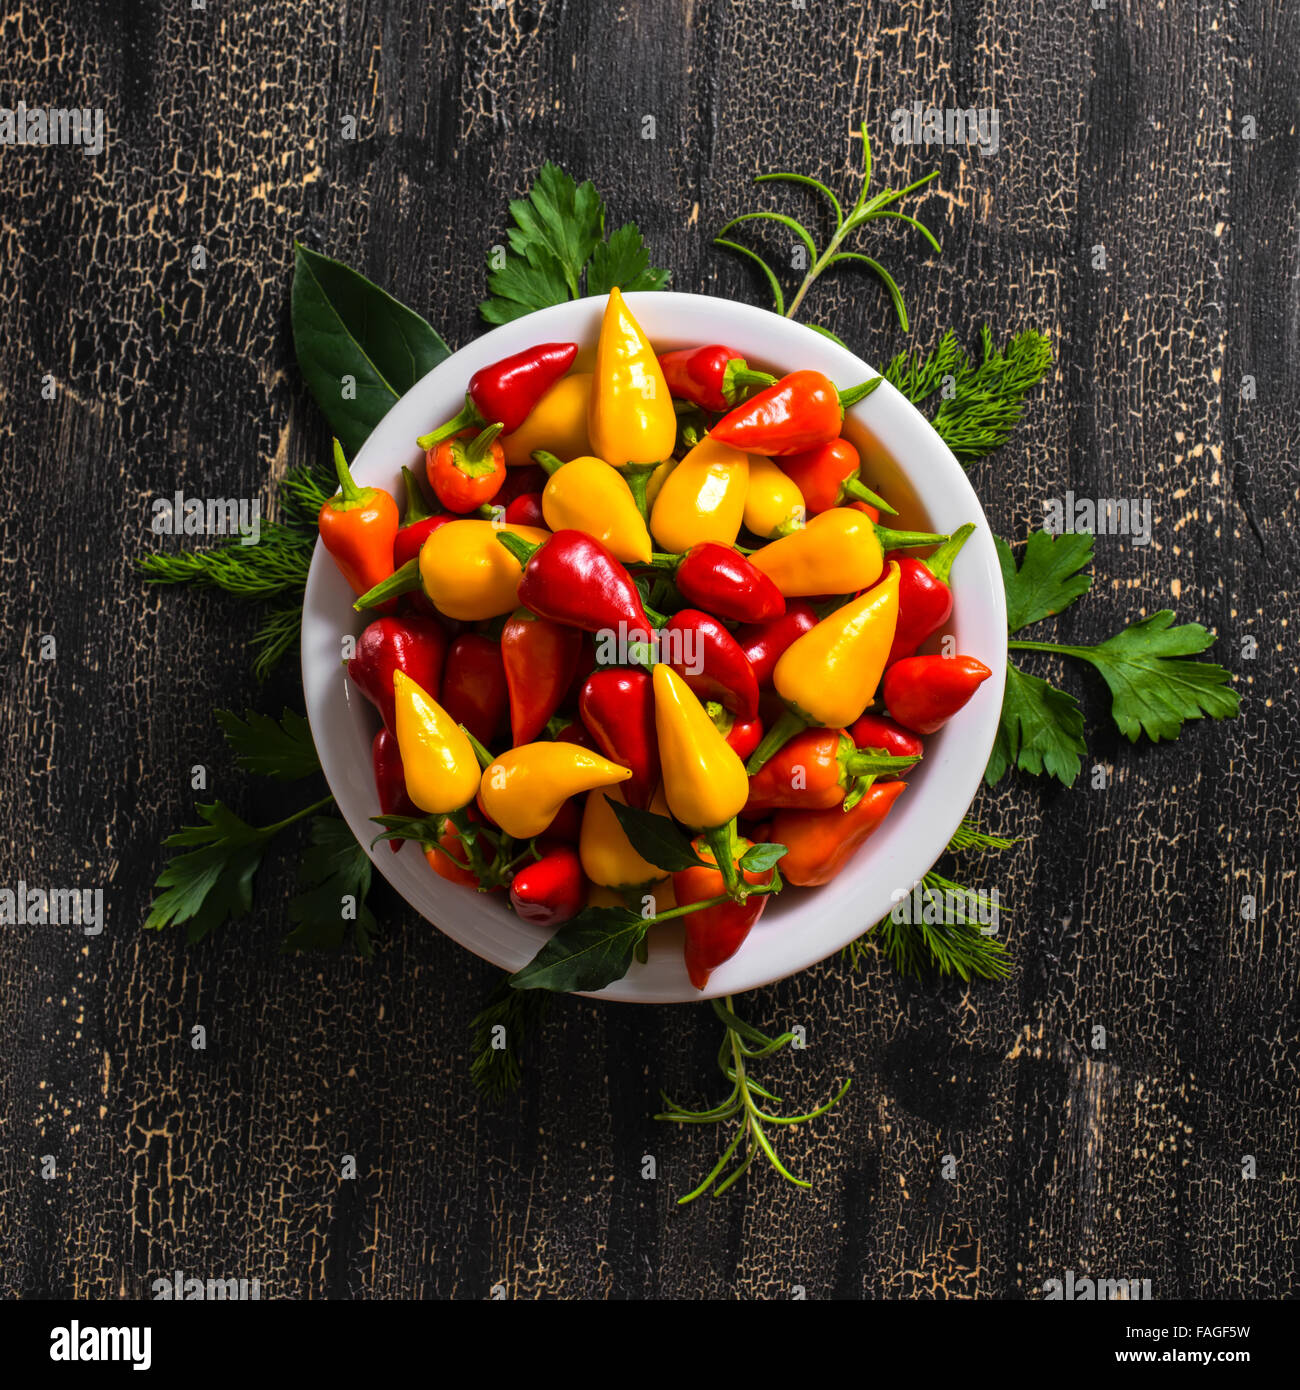 Vue du haut de la plaque à l'orange, rouge et jaune Hot Chili Peppers, de verdure sur fond noir des fissures, Close up Banque D'Images